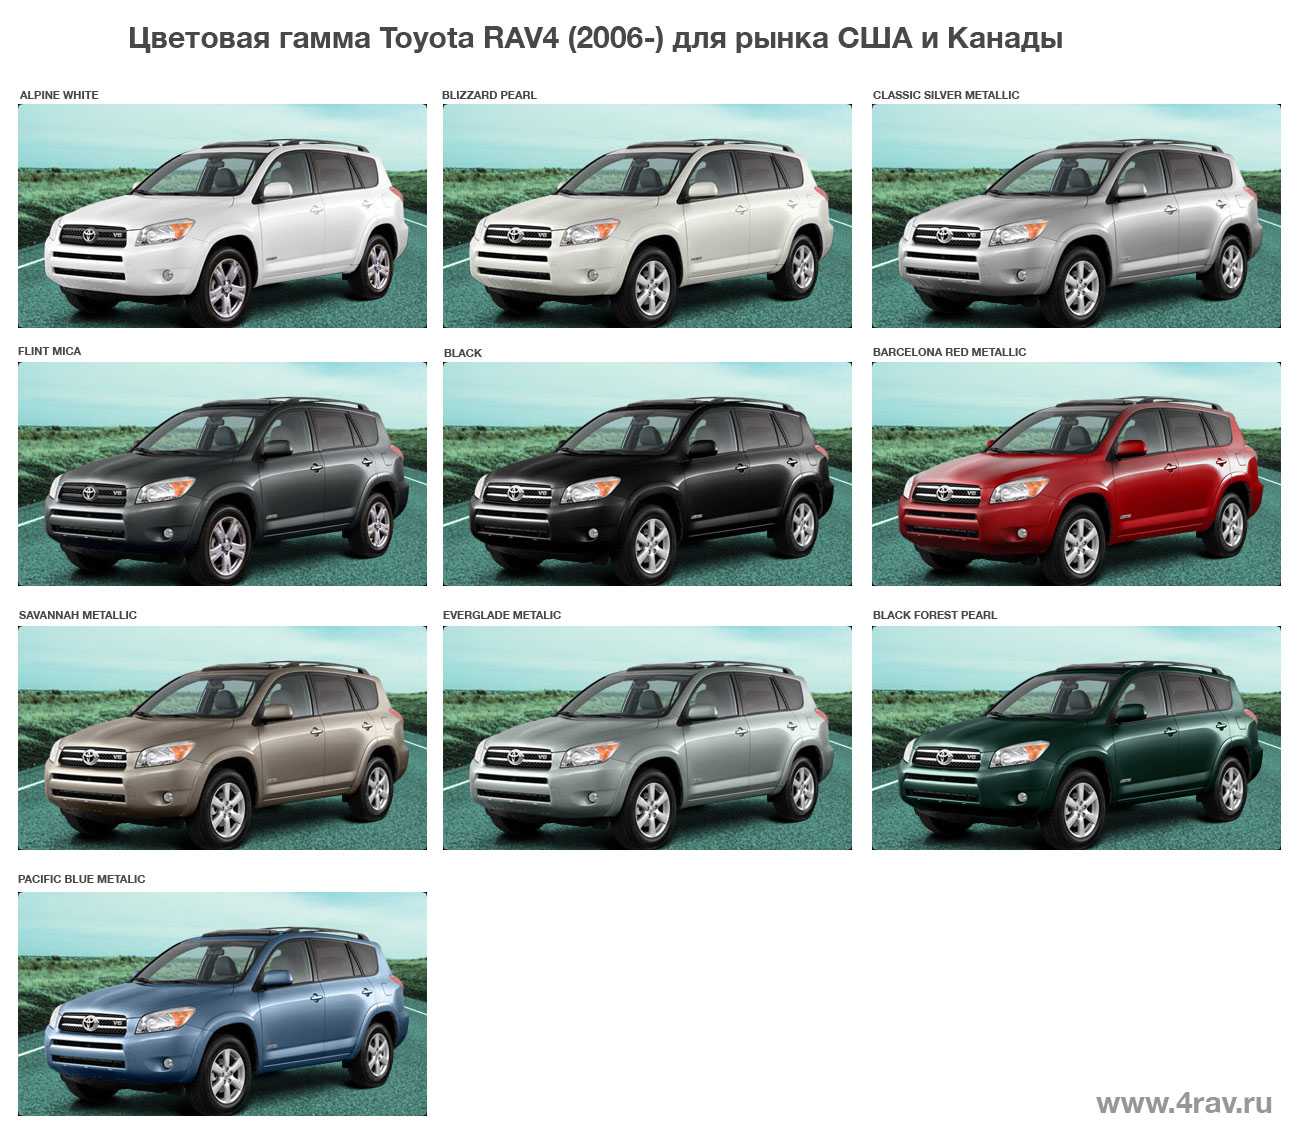 Range rover: поколения, кузова по годам, история модели и года выпуска, рестайлинг, характеристики, габариты, фото - carsweek